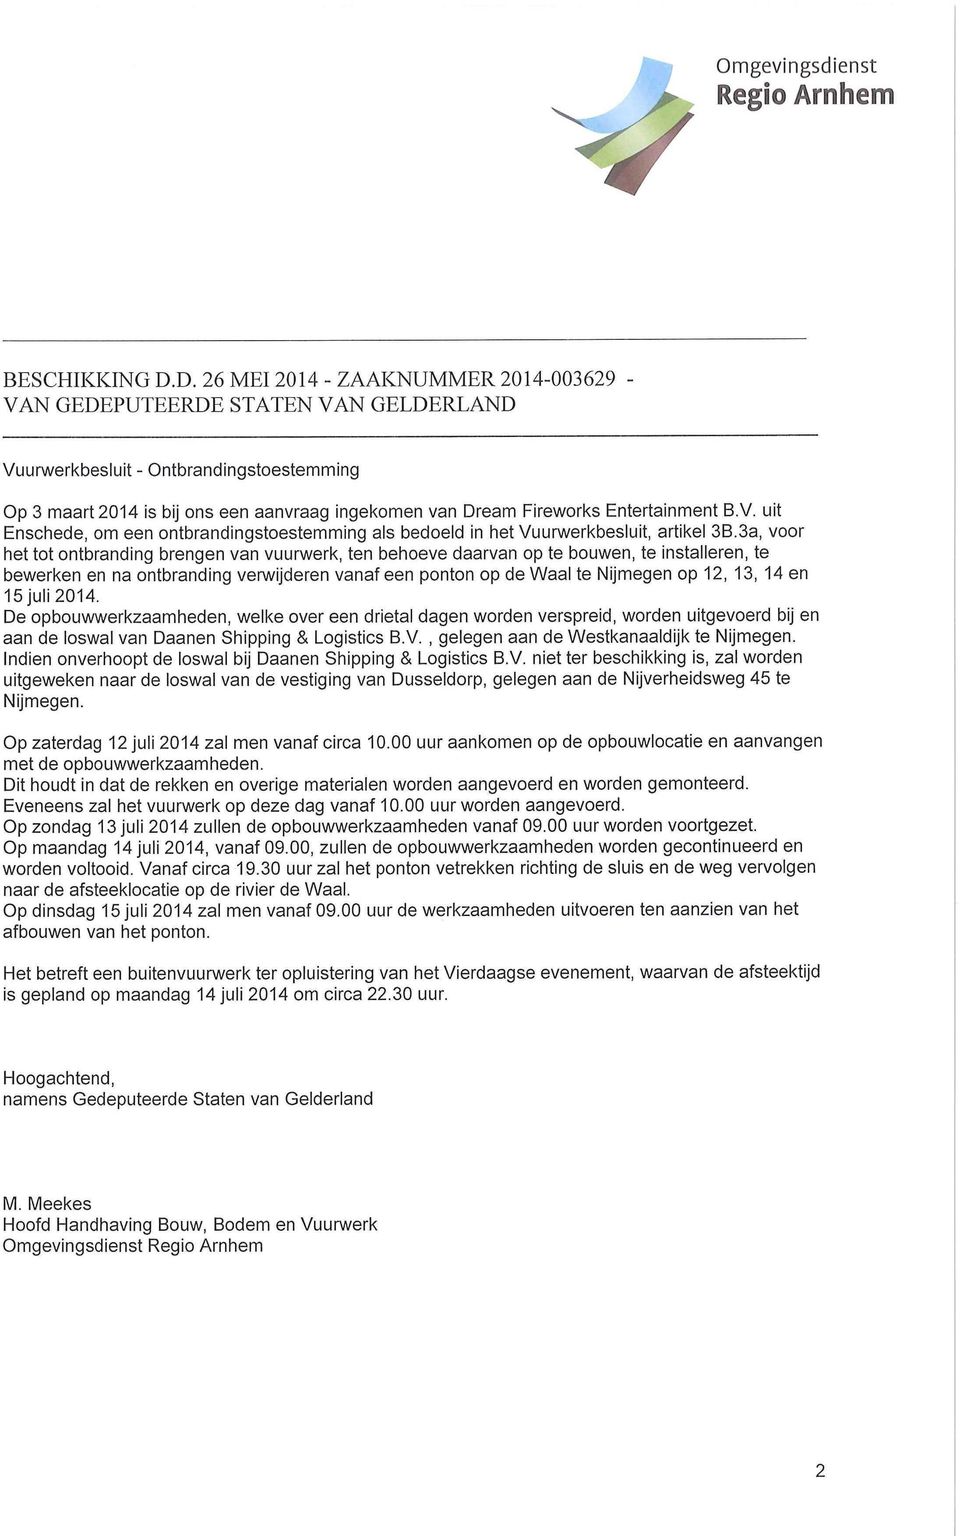 Entertainment B.V. uit Enschede, om een ontbrandingstoestemming als bedoeld in het Vuurwerkbesluit, artikel 3B.